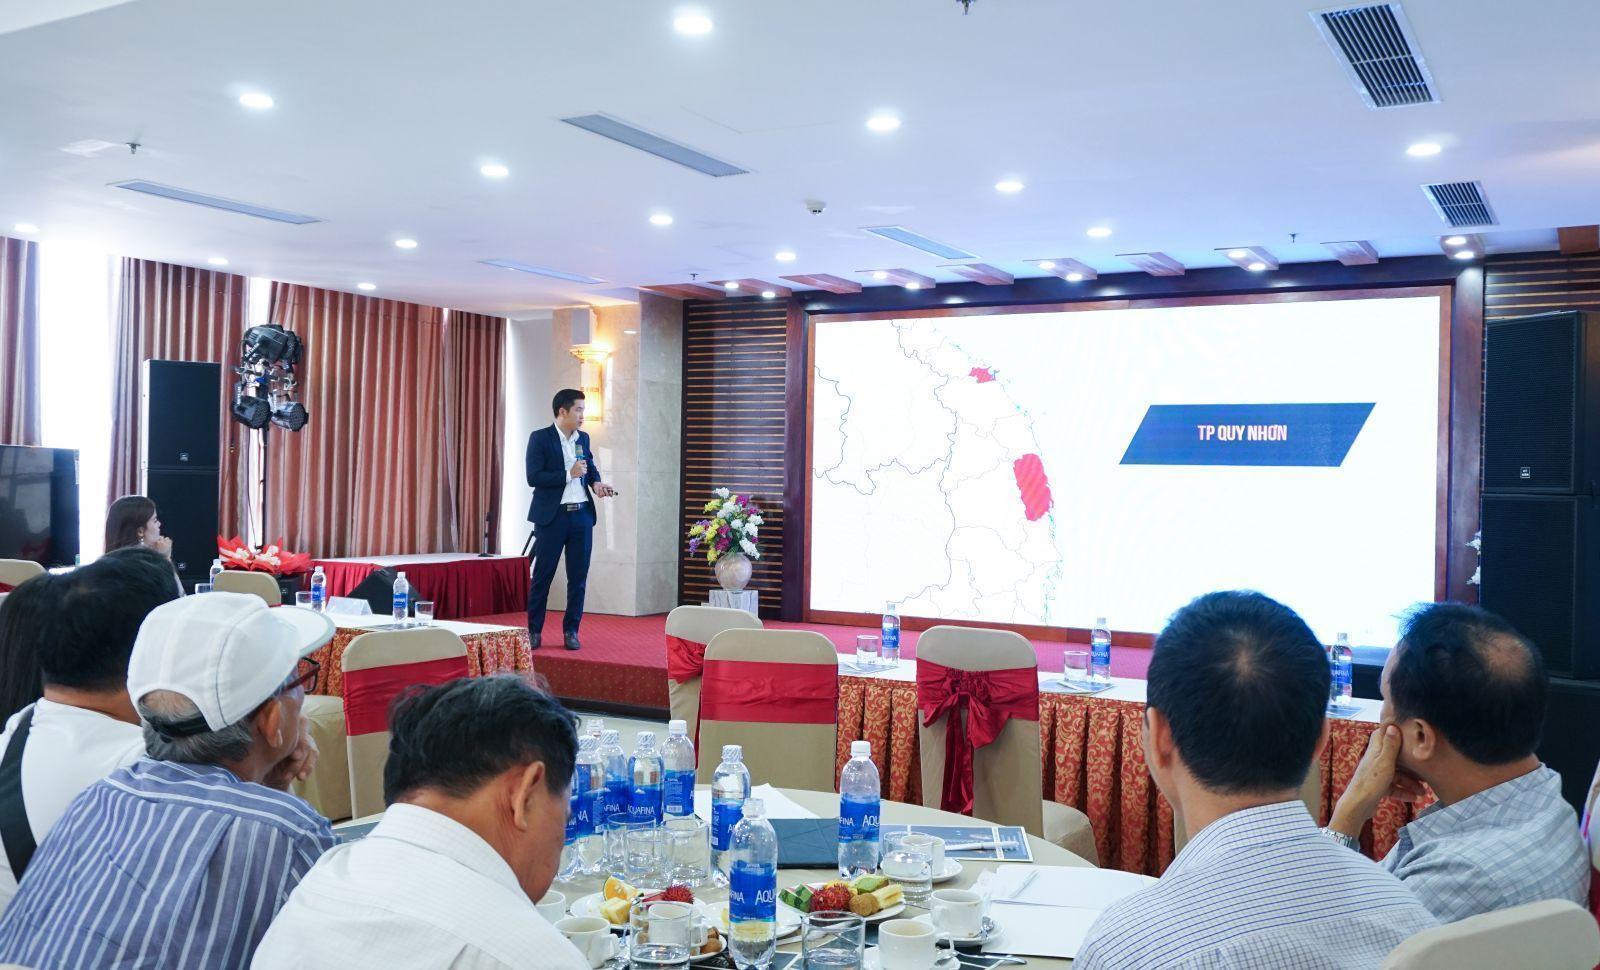 BẤT ĐỘNG SẢN CUỐI NĂM 2019 – ĐẦU TƯ VÀO ĐÂU ĐỂ SINH LỜI? - Viet Nam Smart City